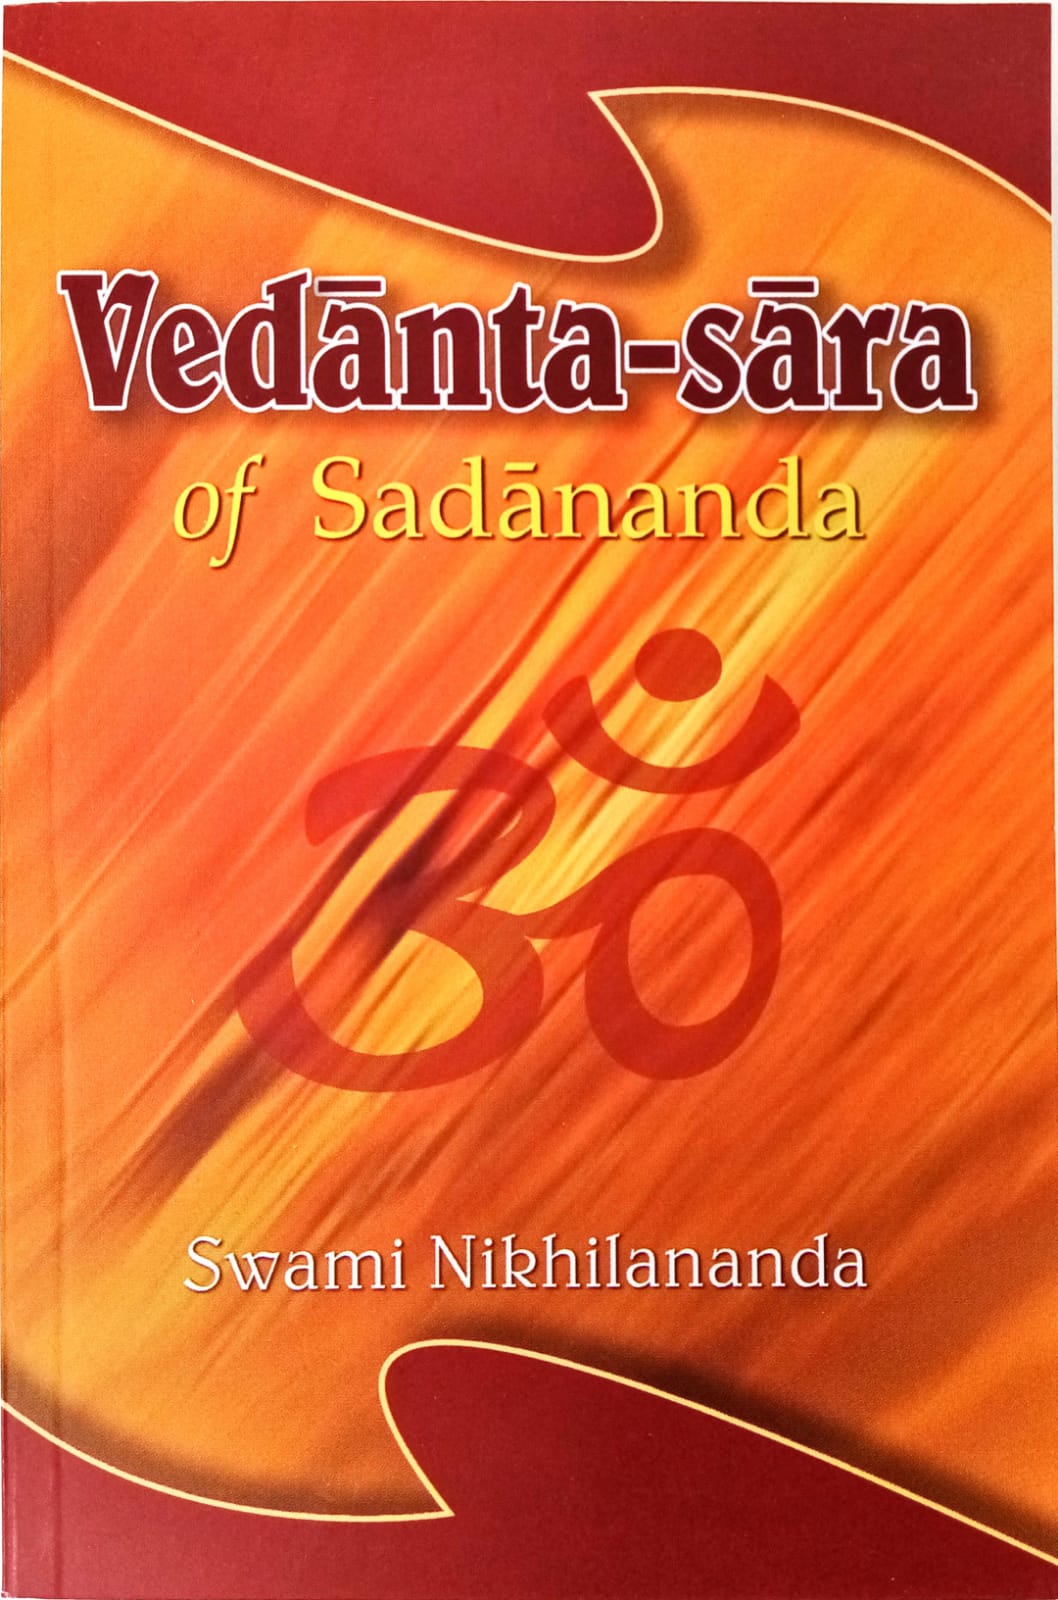 Vedanta-sara of Sadananda